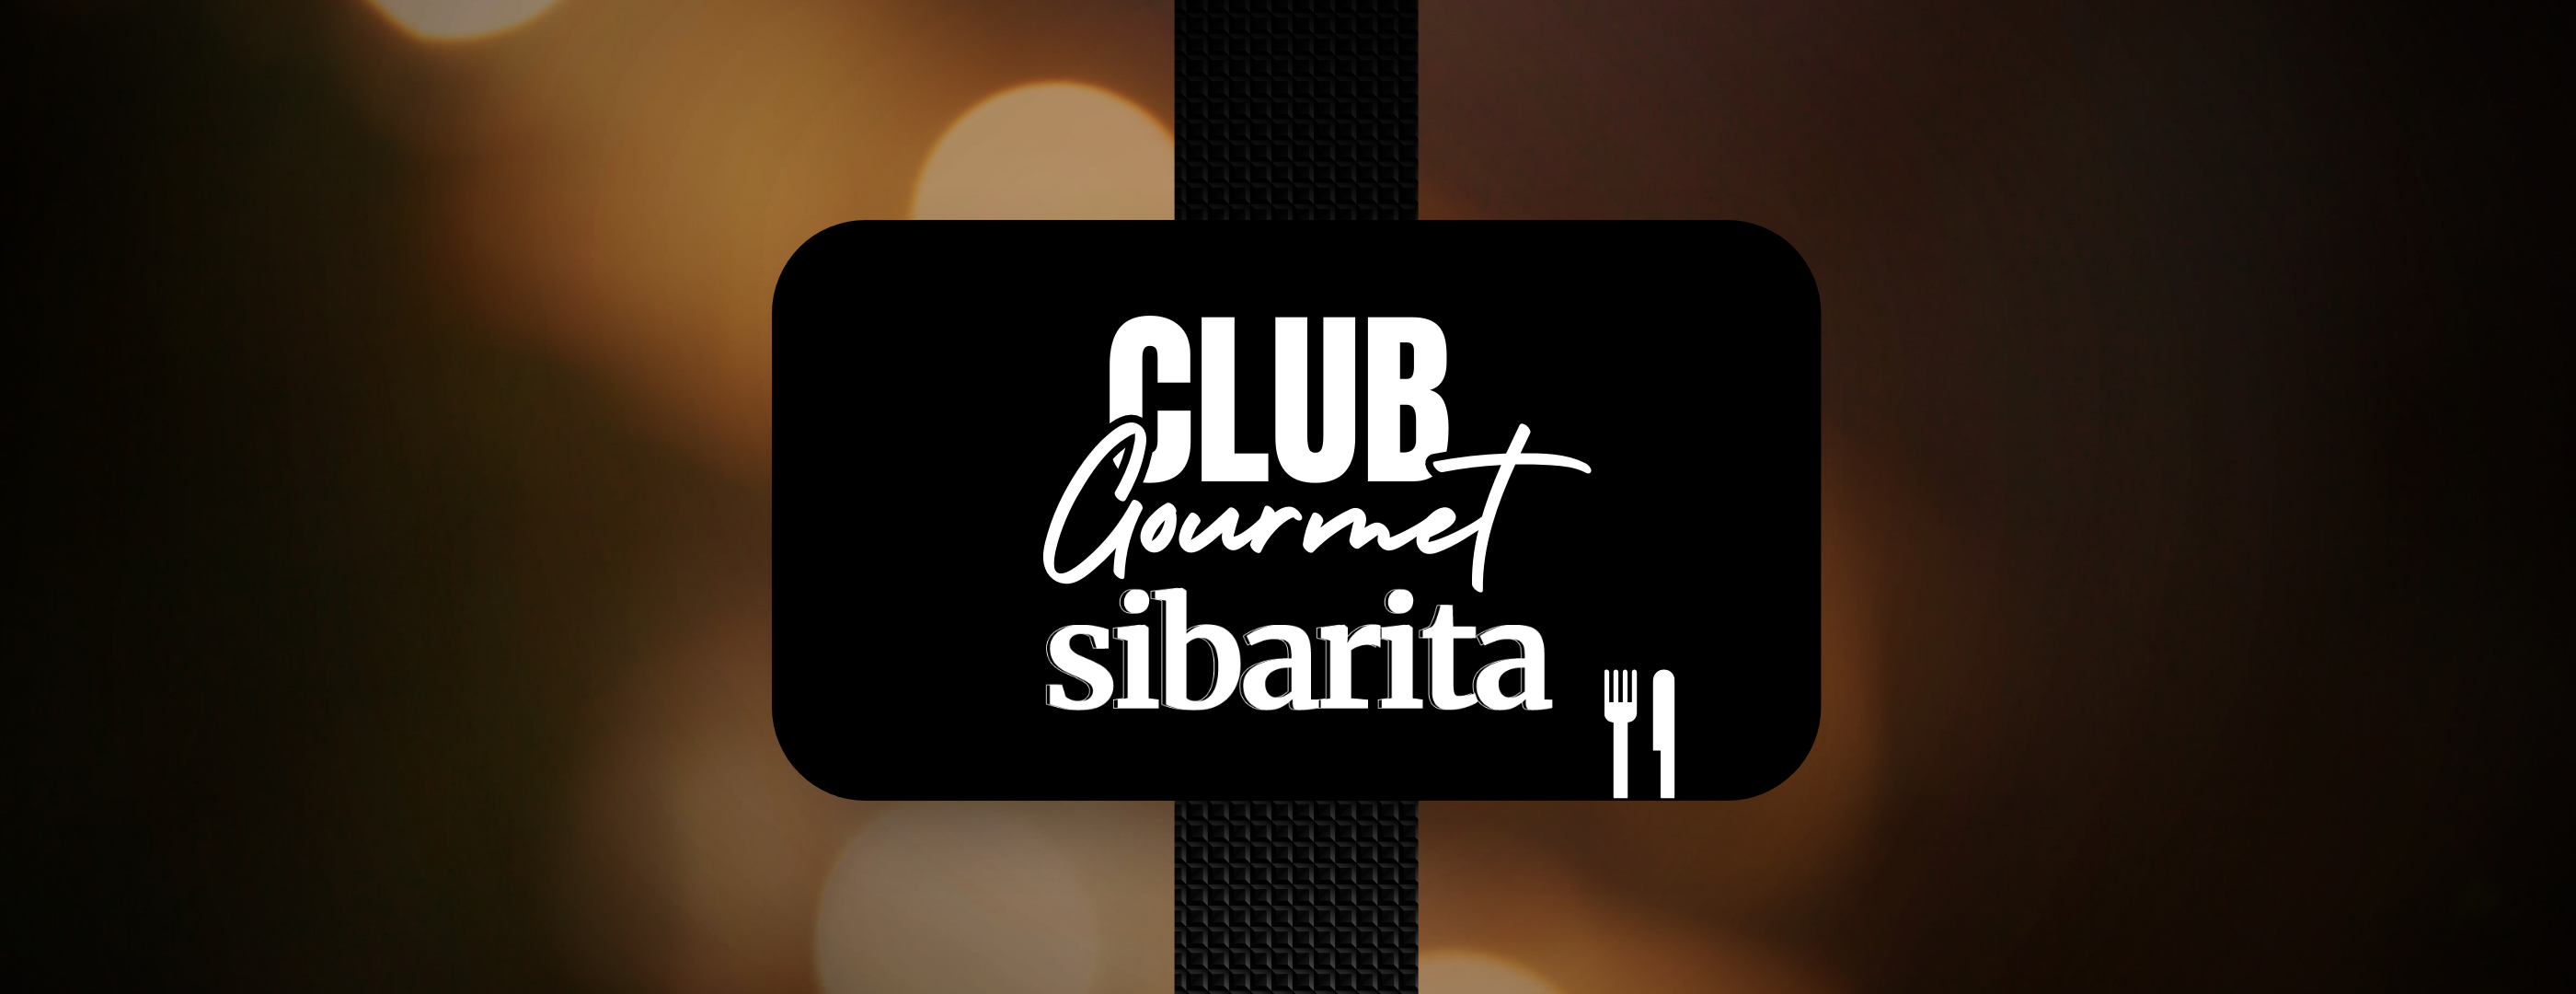 Club-gourmet sibarita